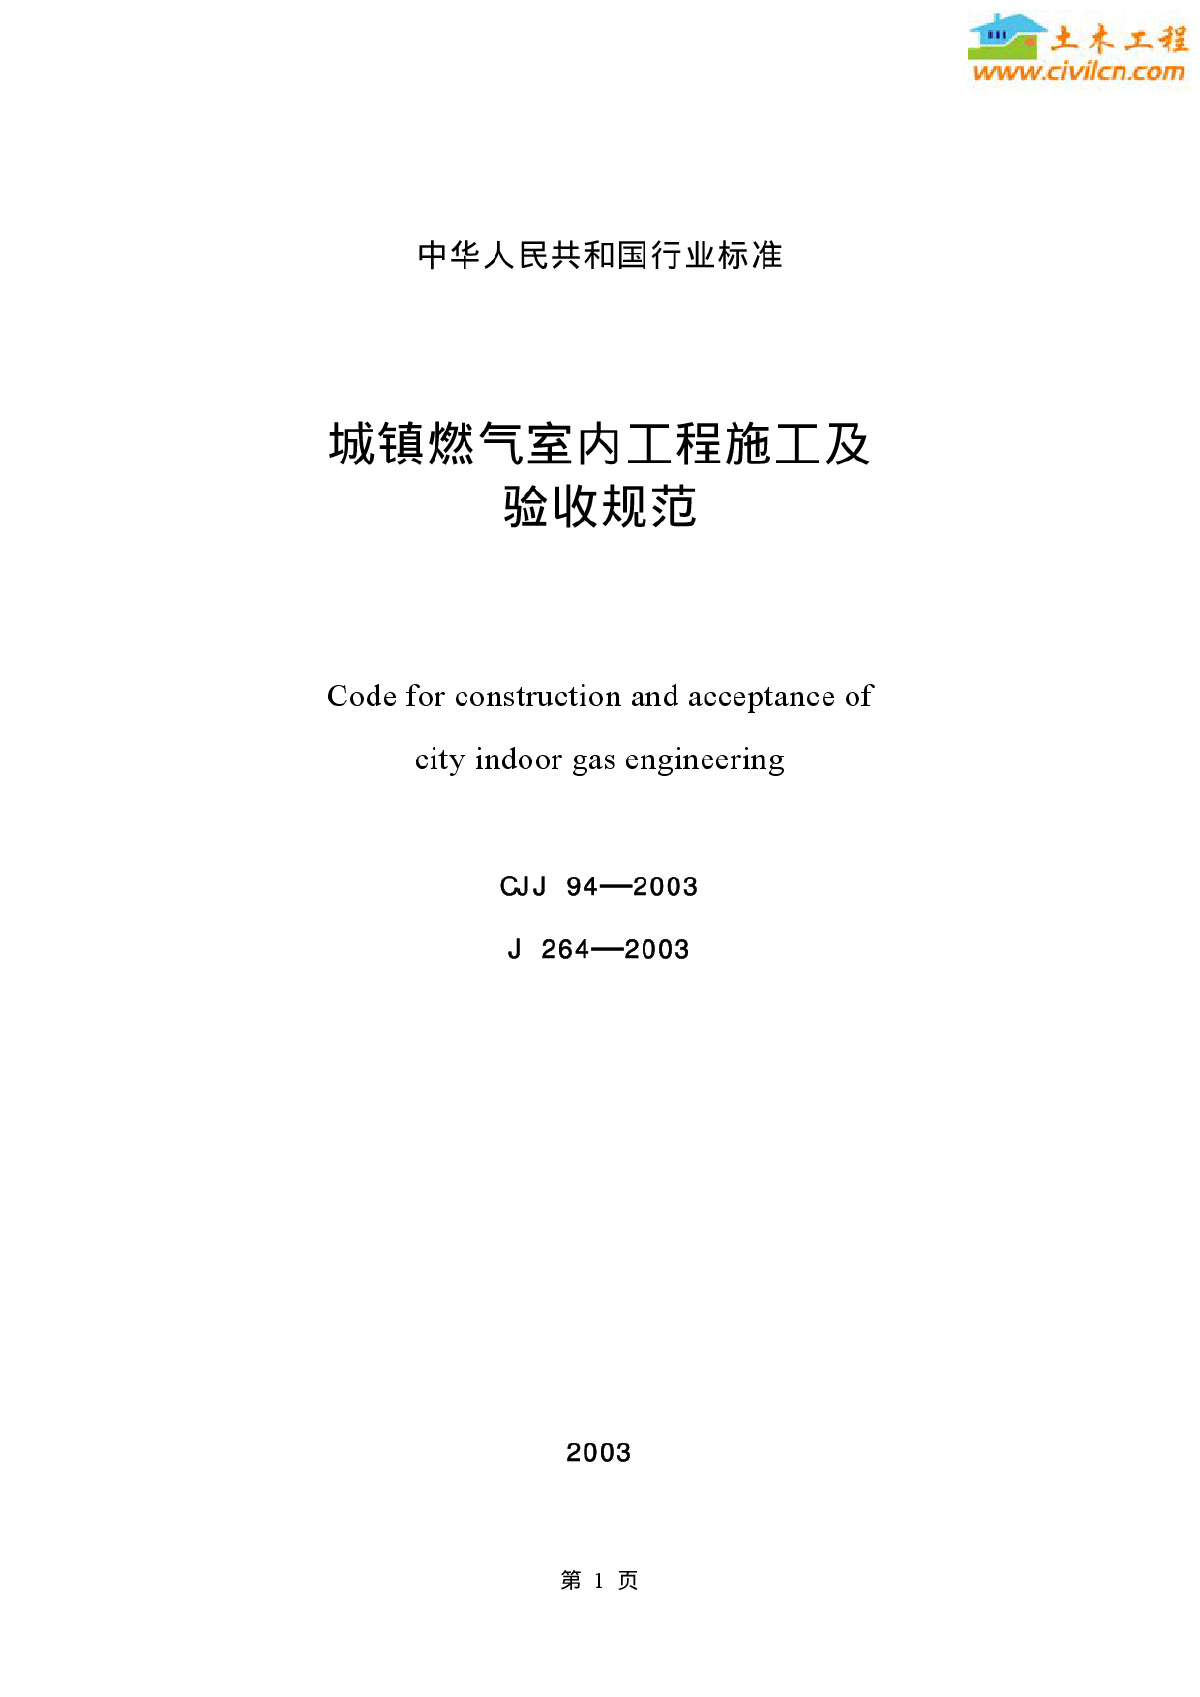 城镇燃气室内工程施工及验收规范 条文说明 (CJJ94-2003)